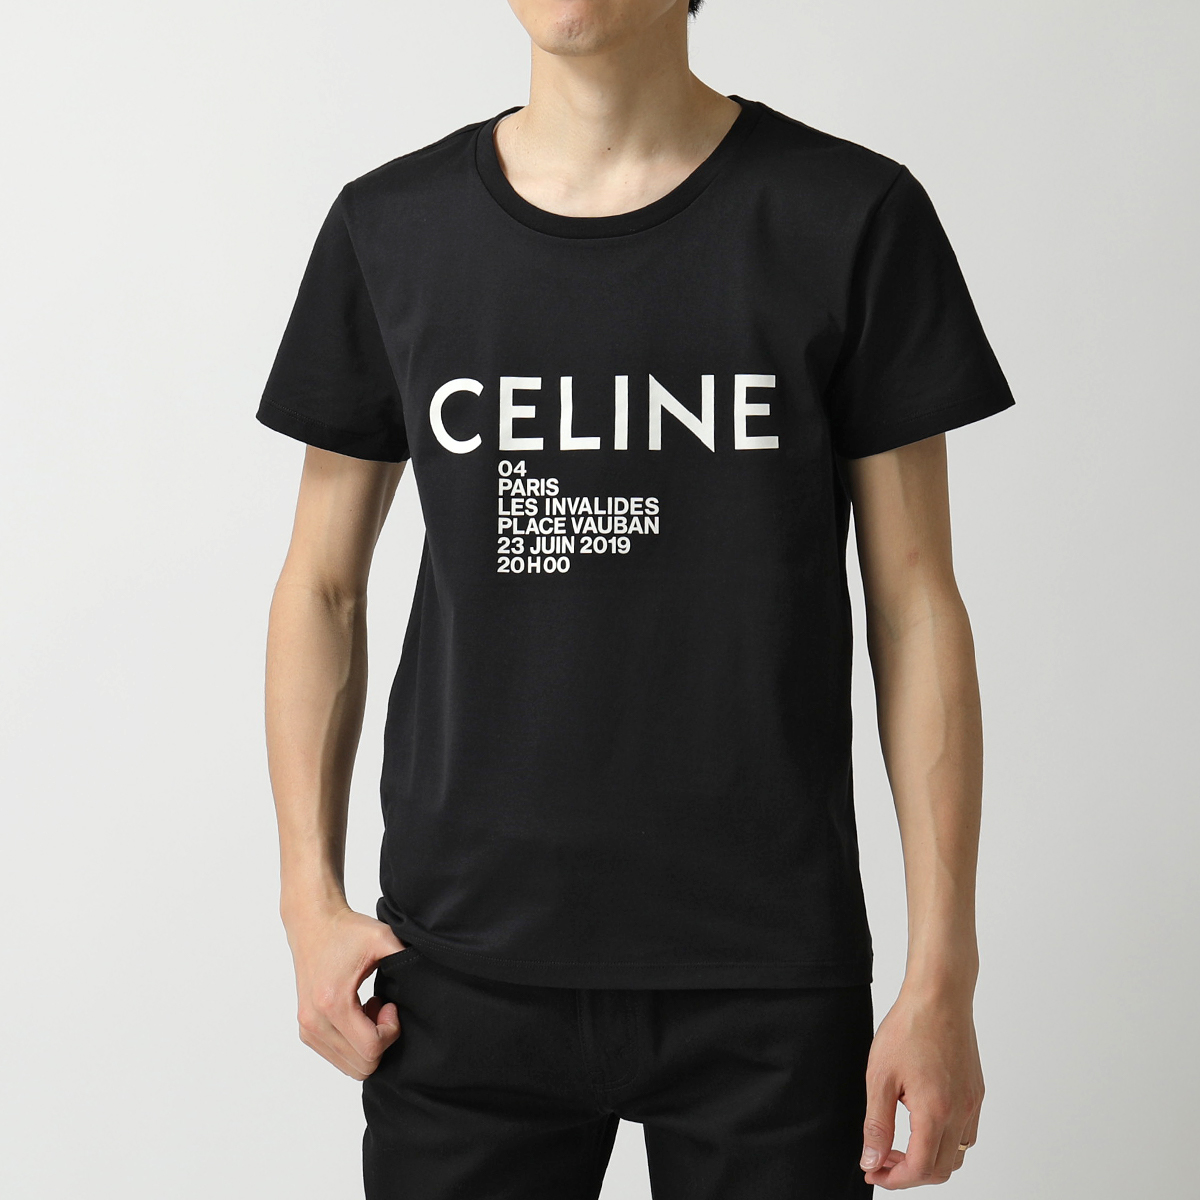 CELINE セリーヌ 2X308799I.38AW ロゴT 半袖 Tシャツ カットソー ブラック メンズ | インポートセレクト musee